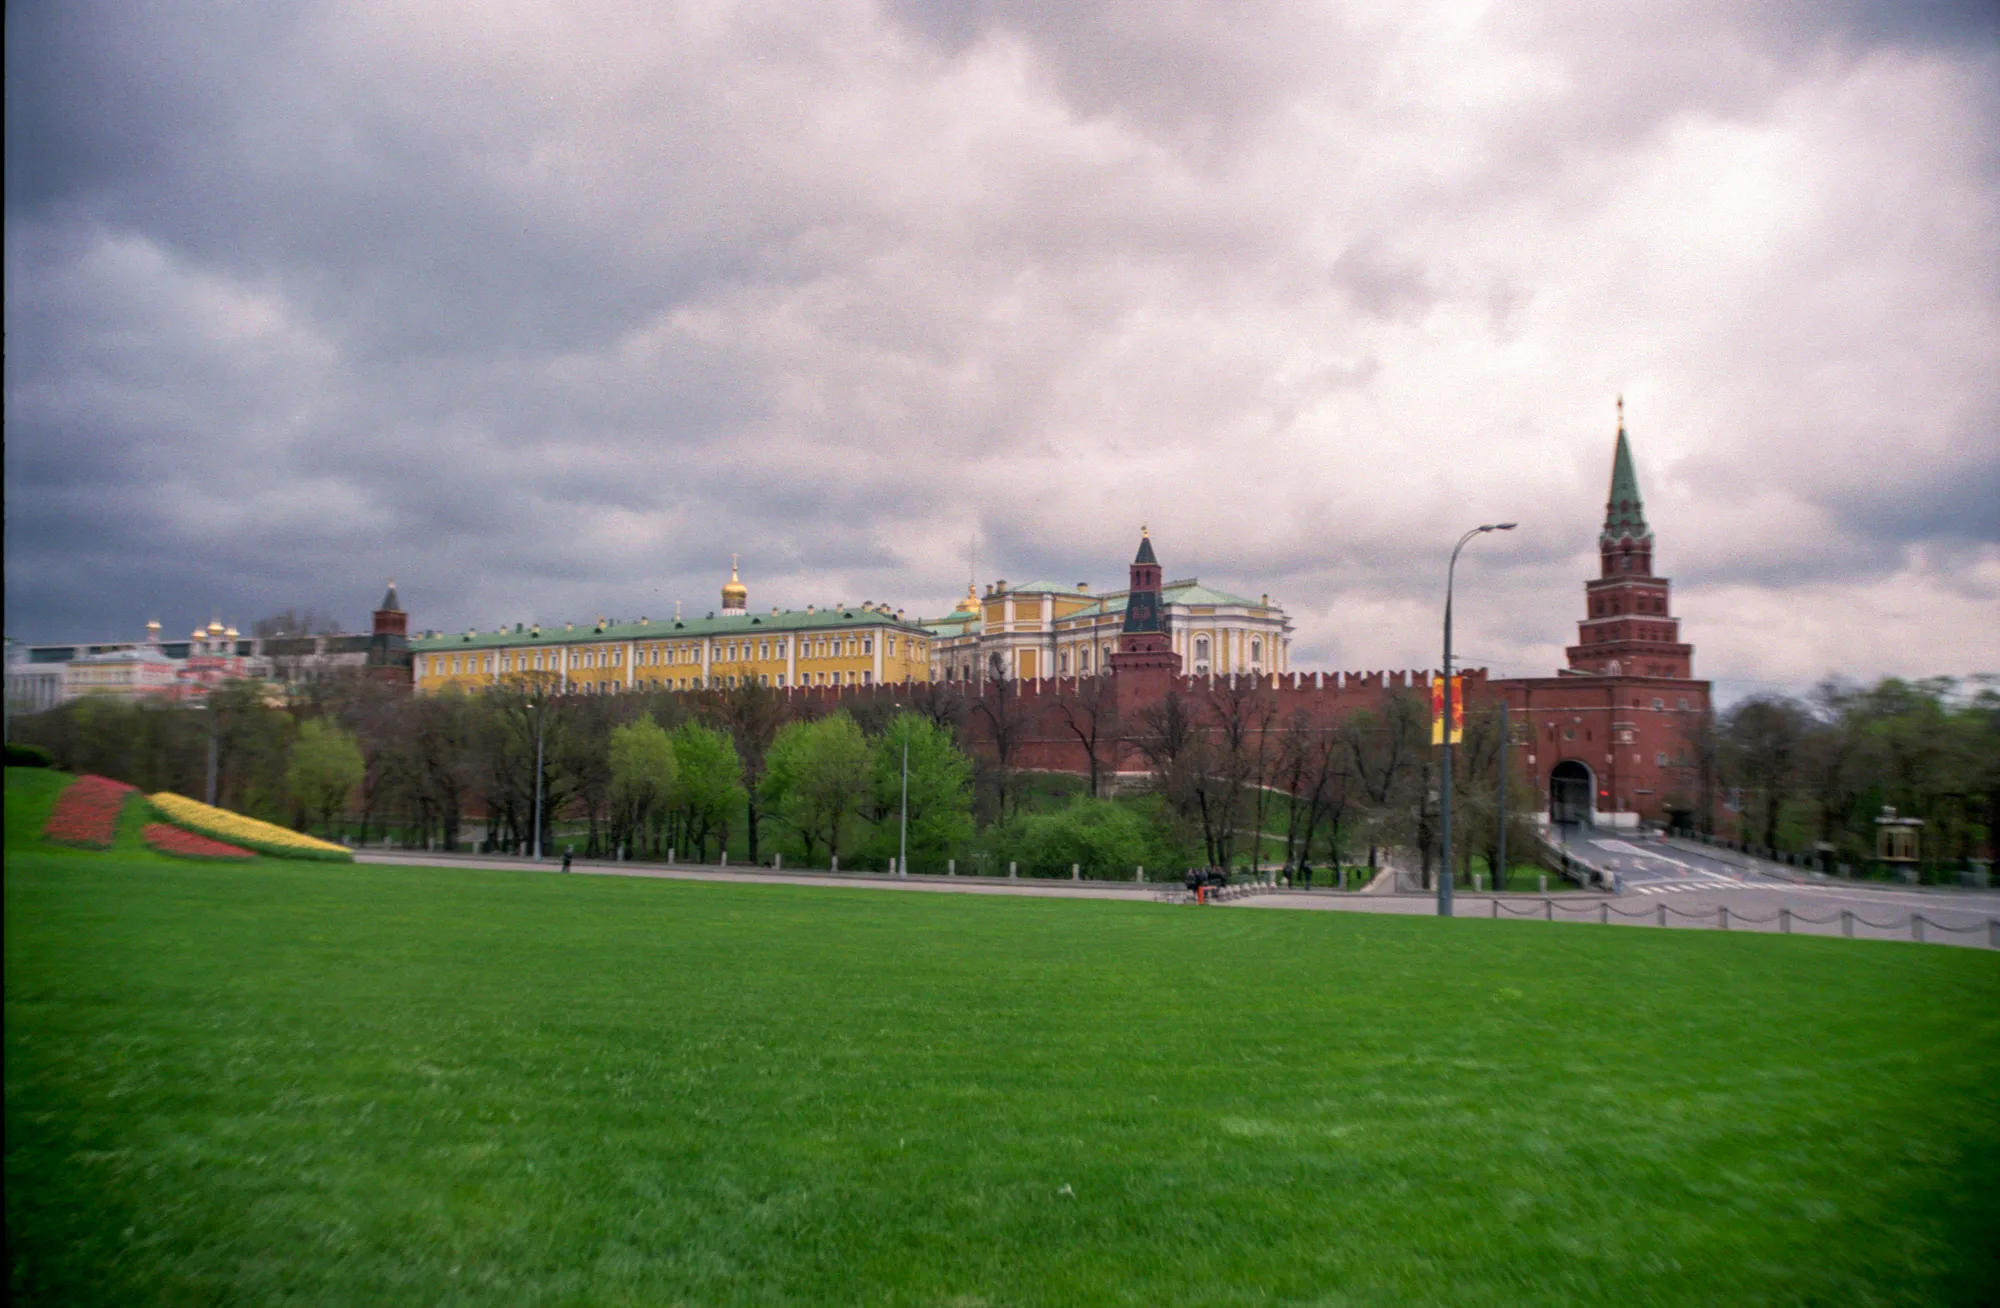 Kremlin Towers